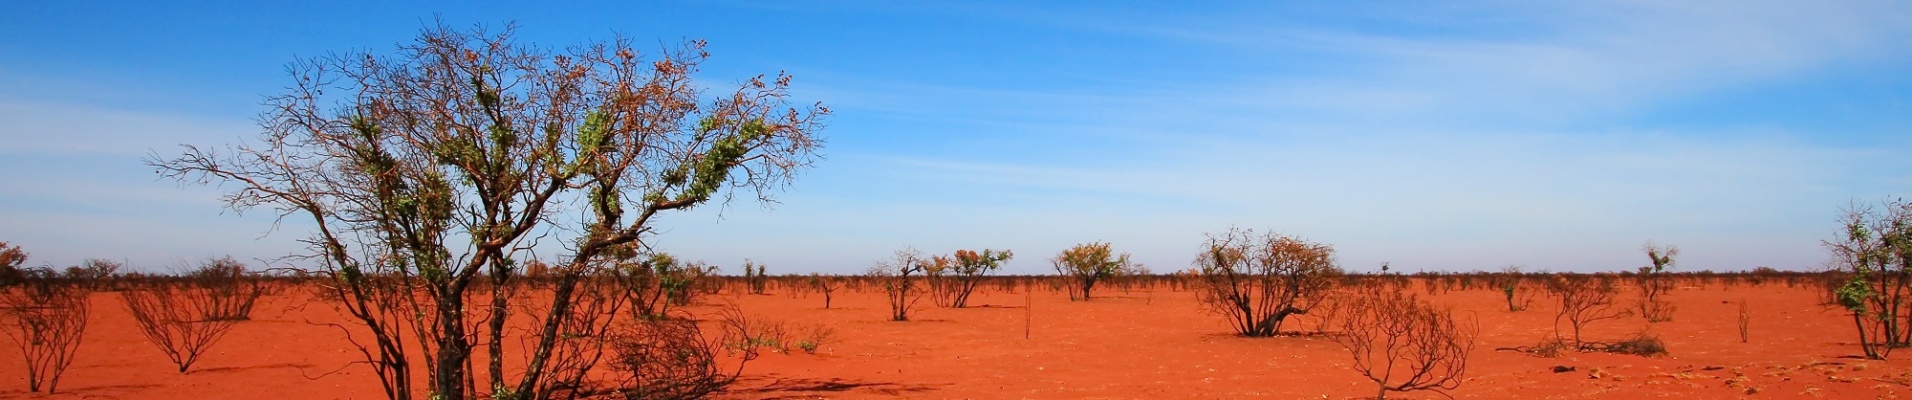 Terre rouge du désert australien avec un arbre